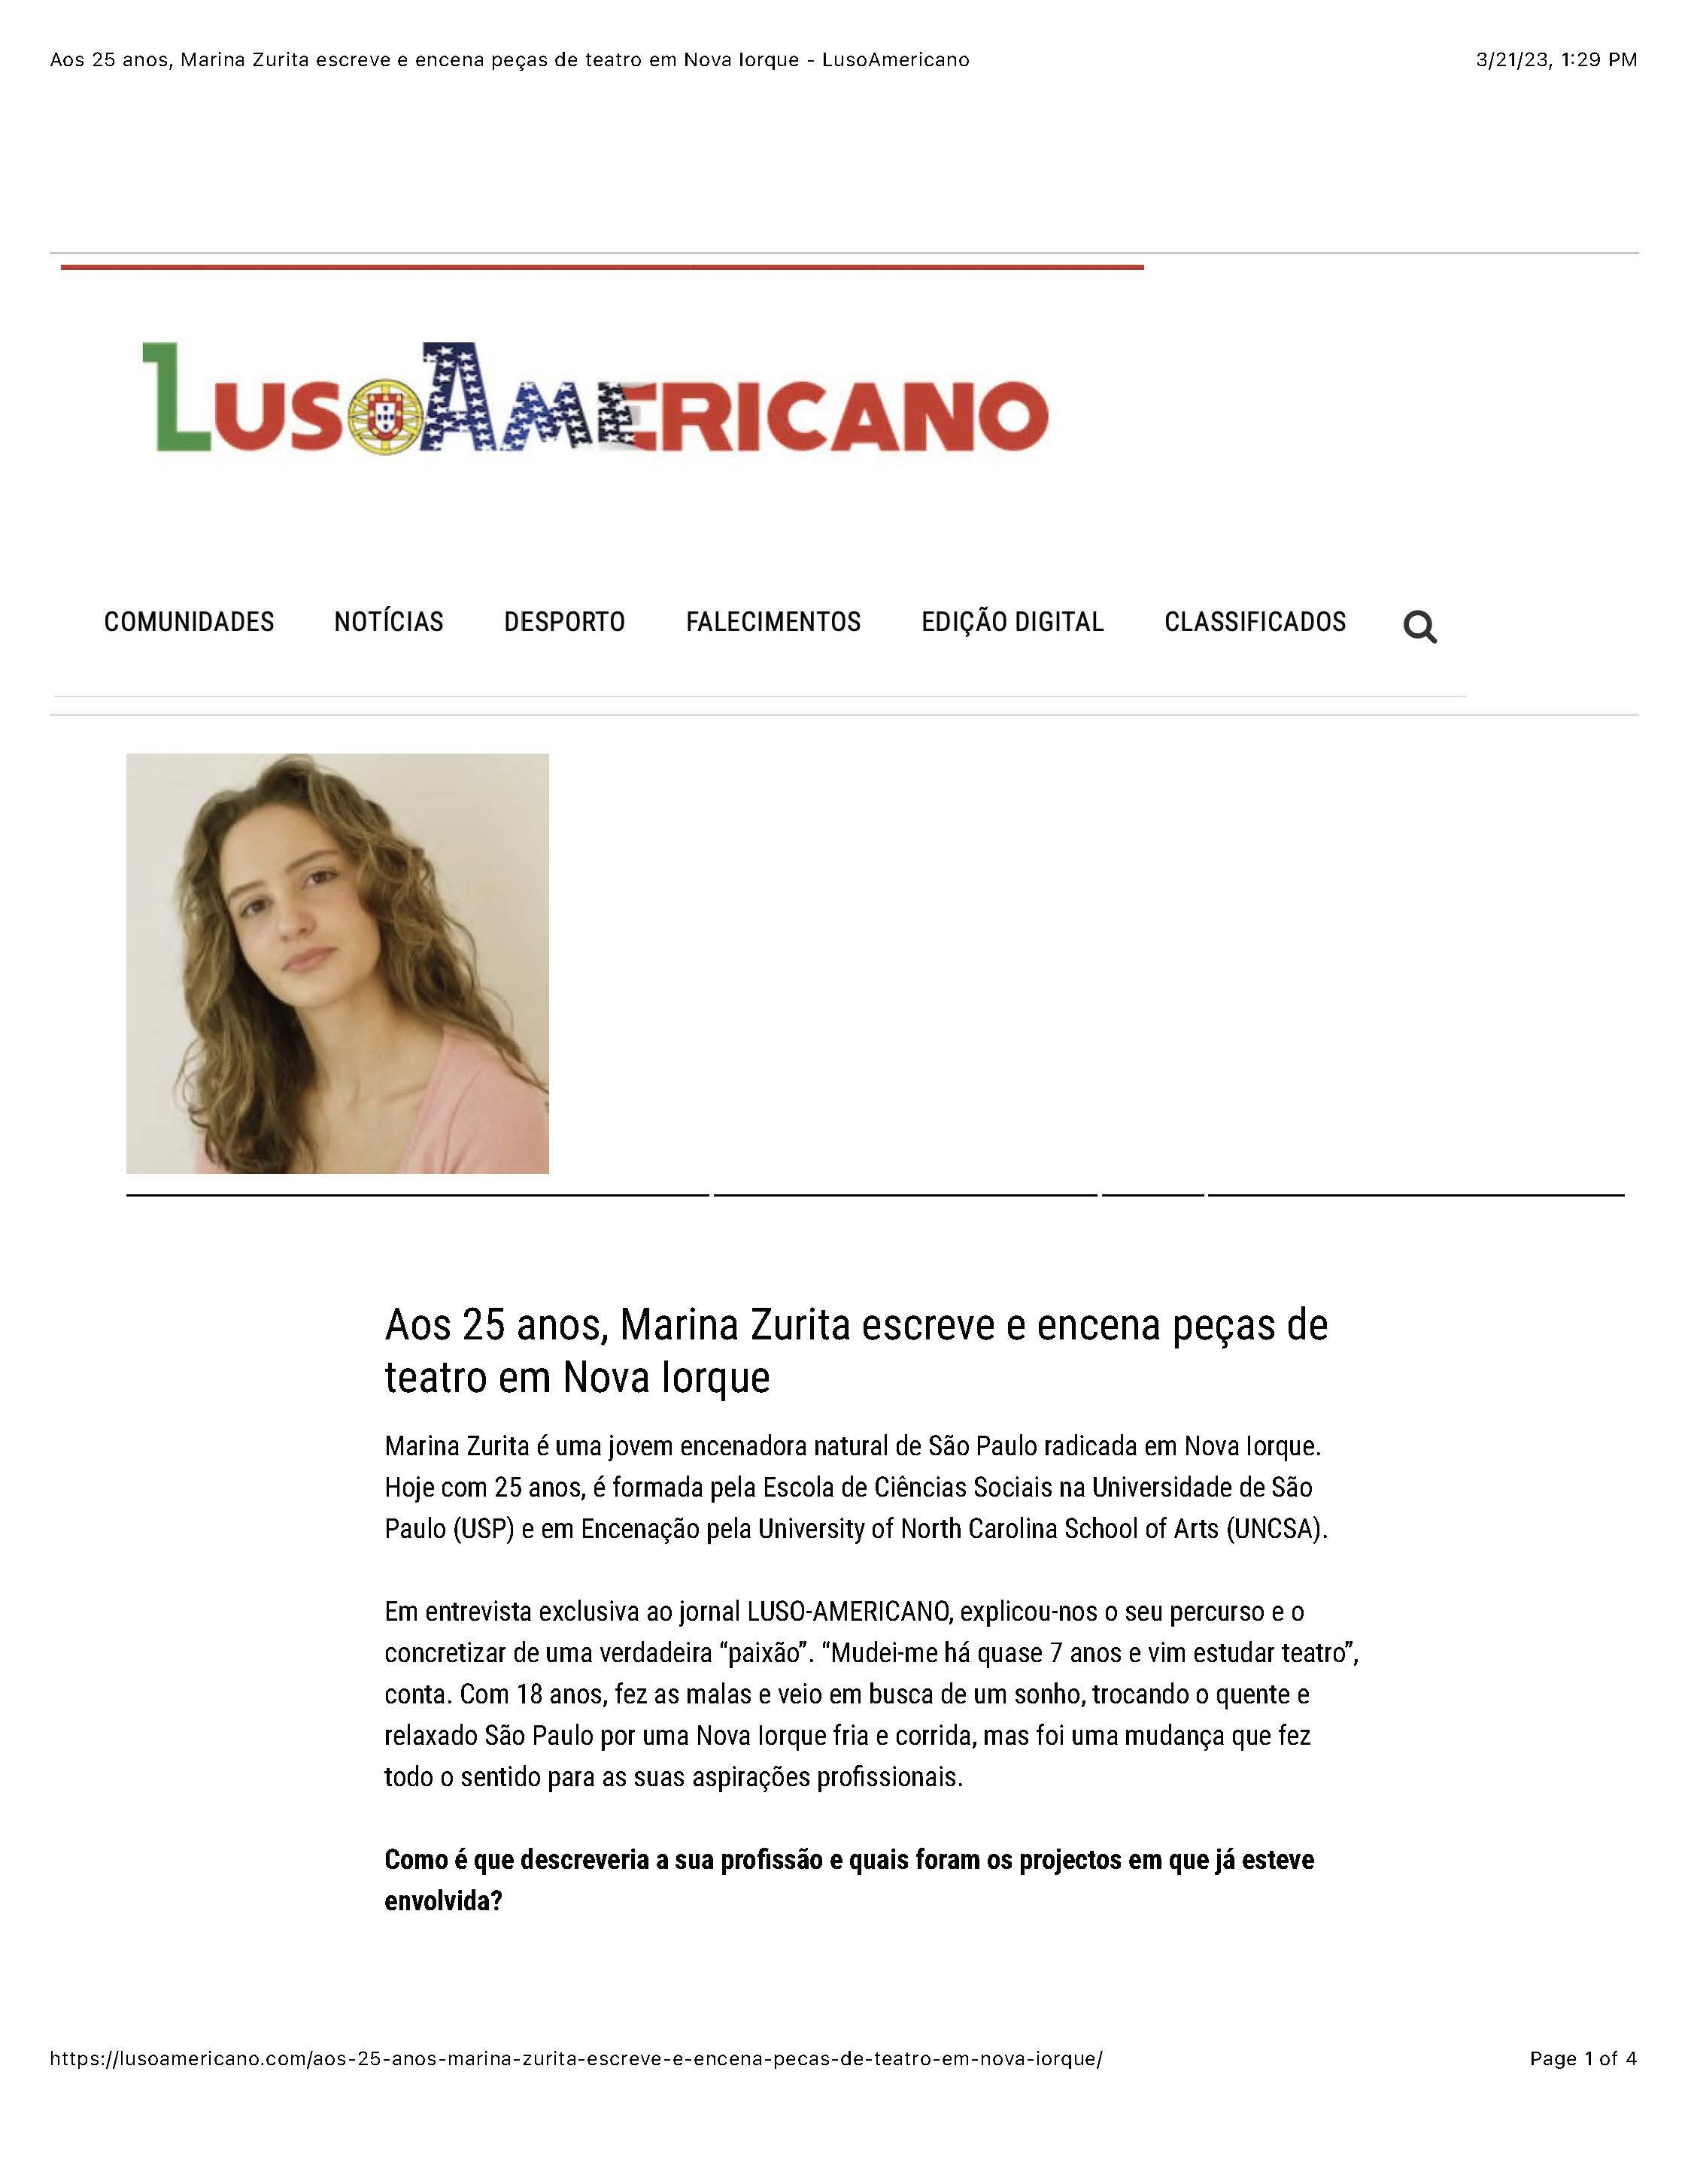 Aos 25 anos, Marina Zurita escreve e encena peÃÂ§as de teatro em Nova Iorque - LusoAmericano_Page_1.jpg